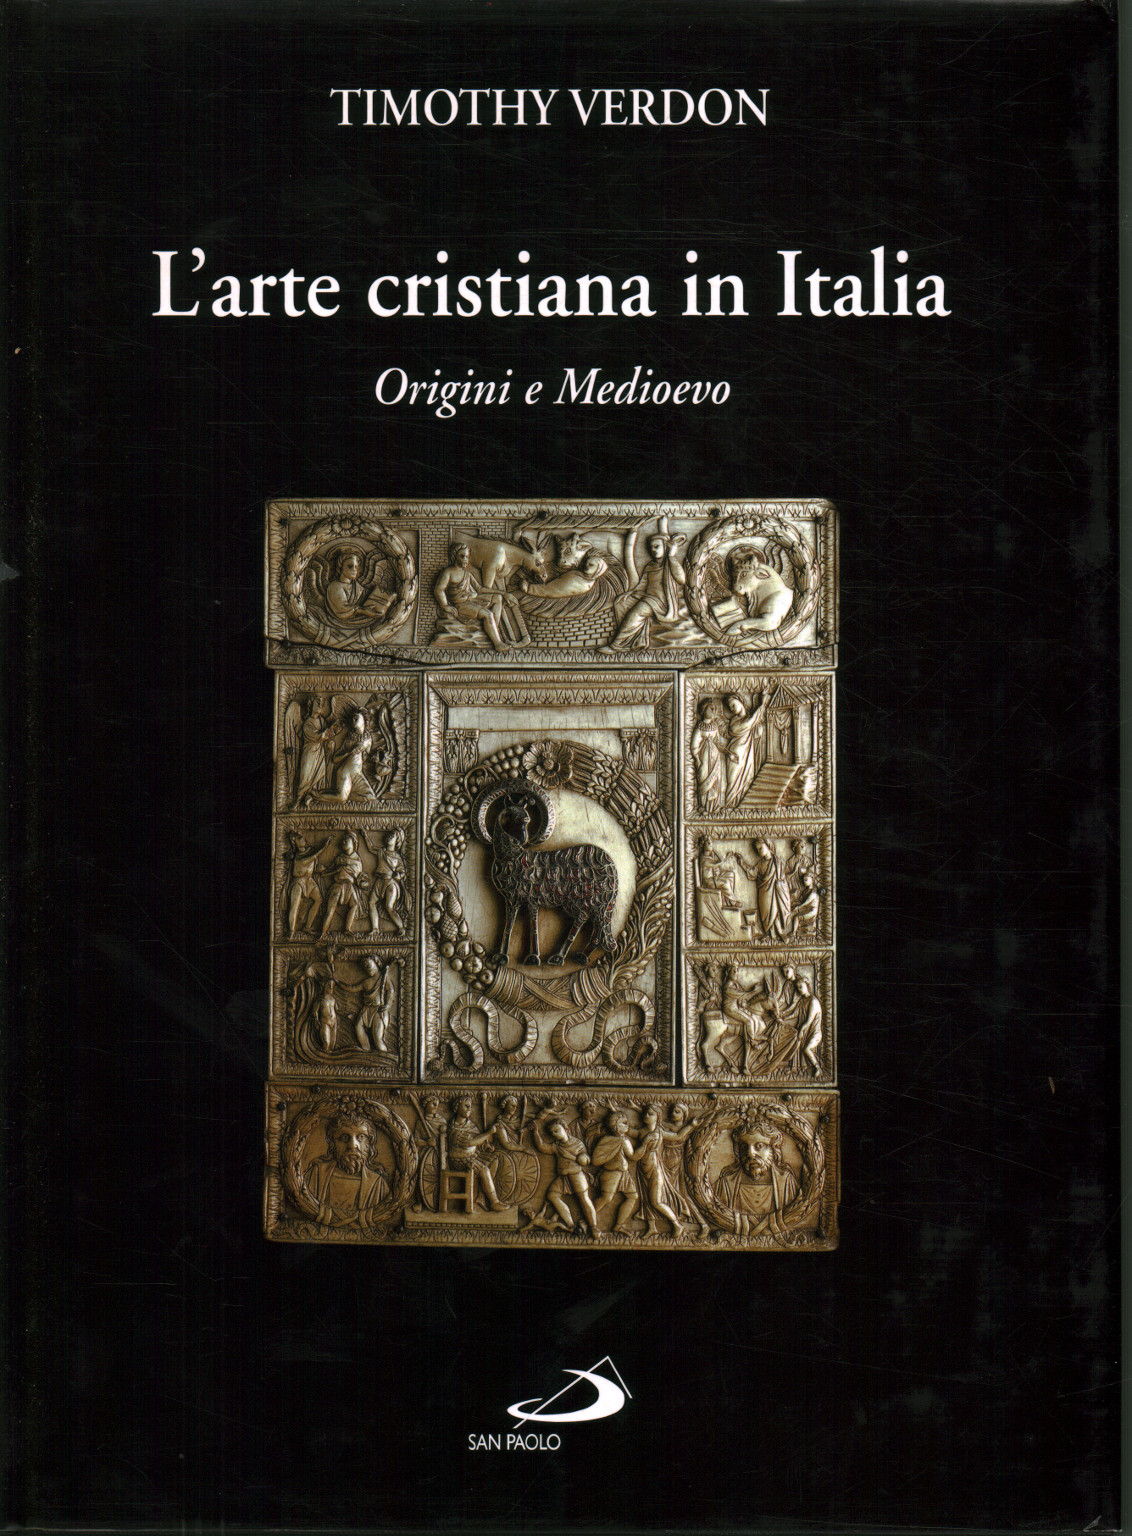 Christian art in Italy (volume 1), Timothy Verdon